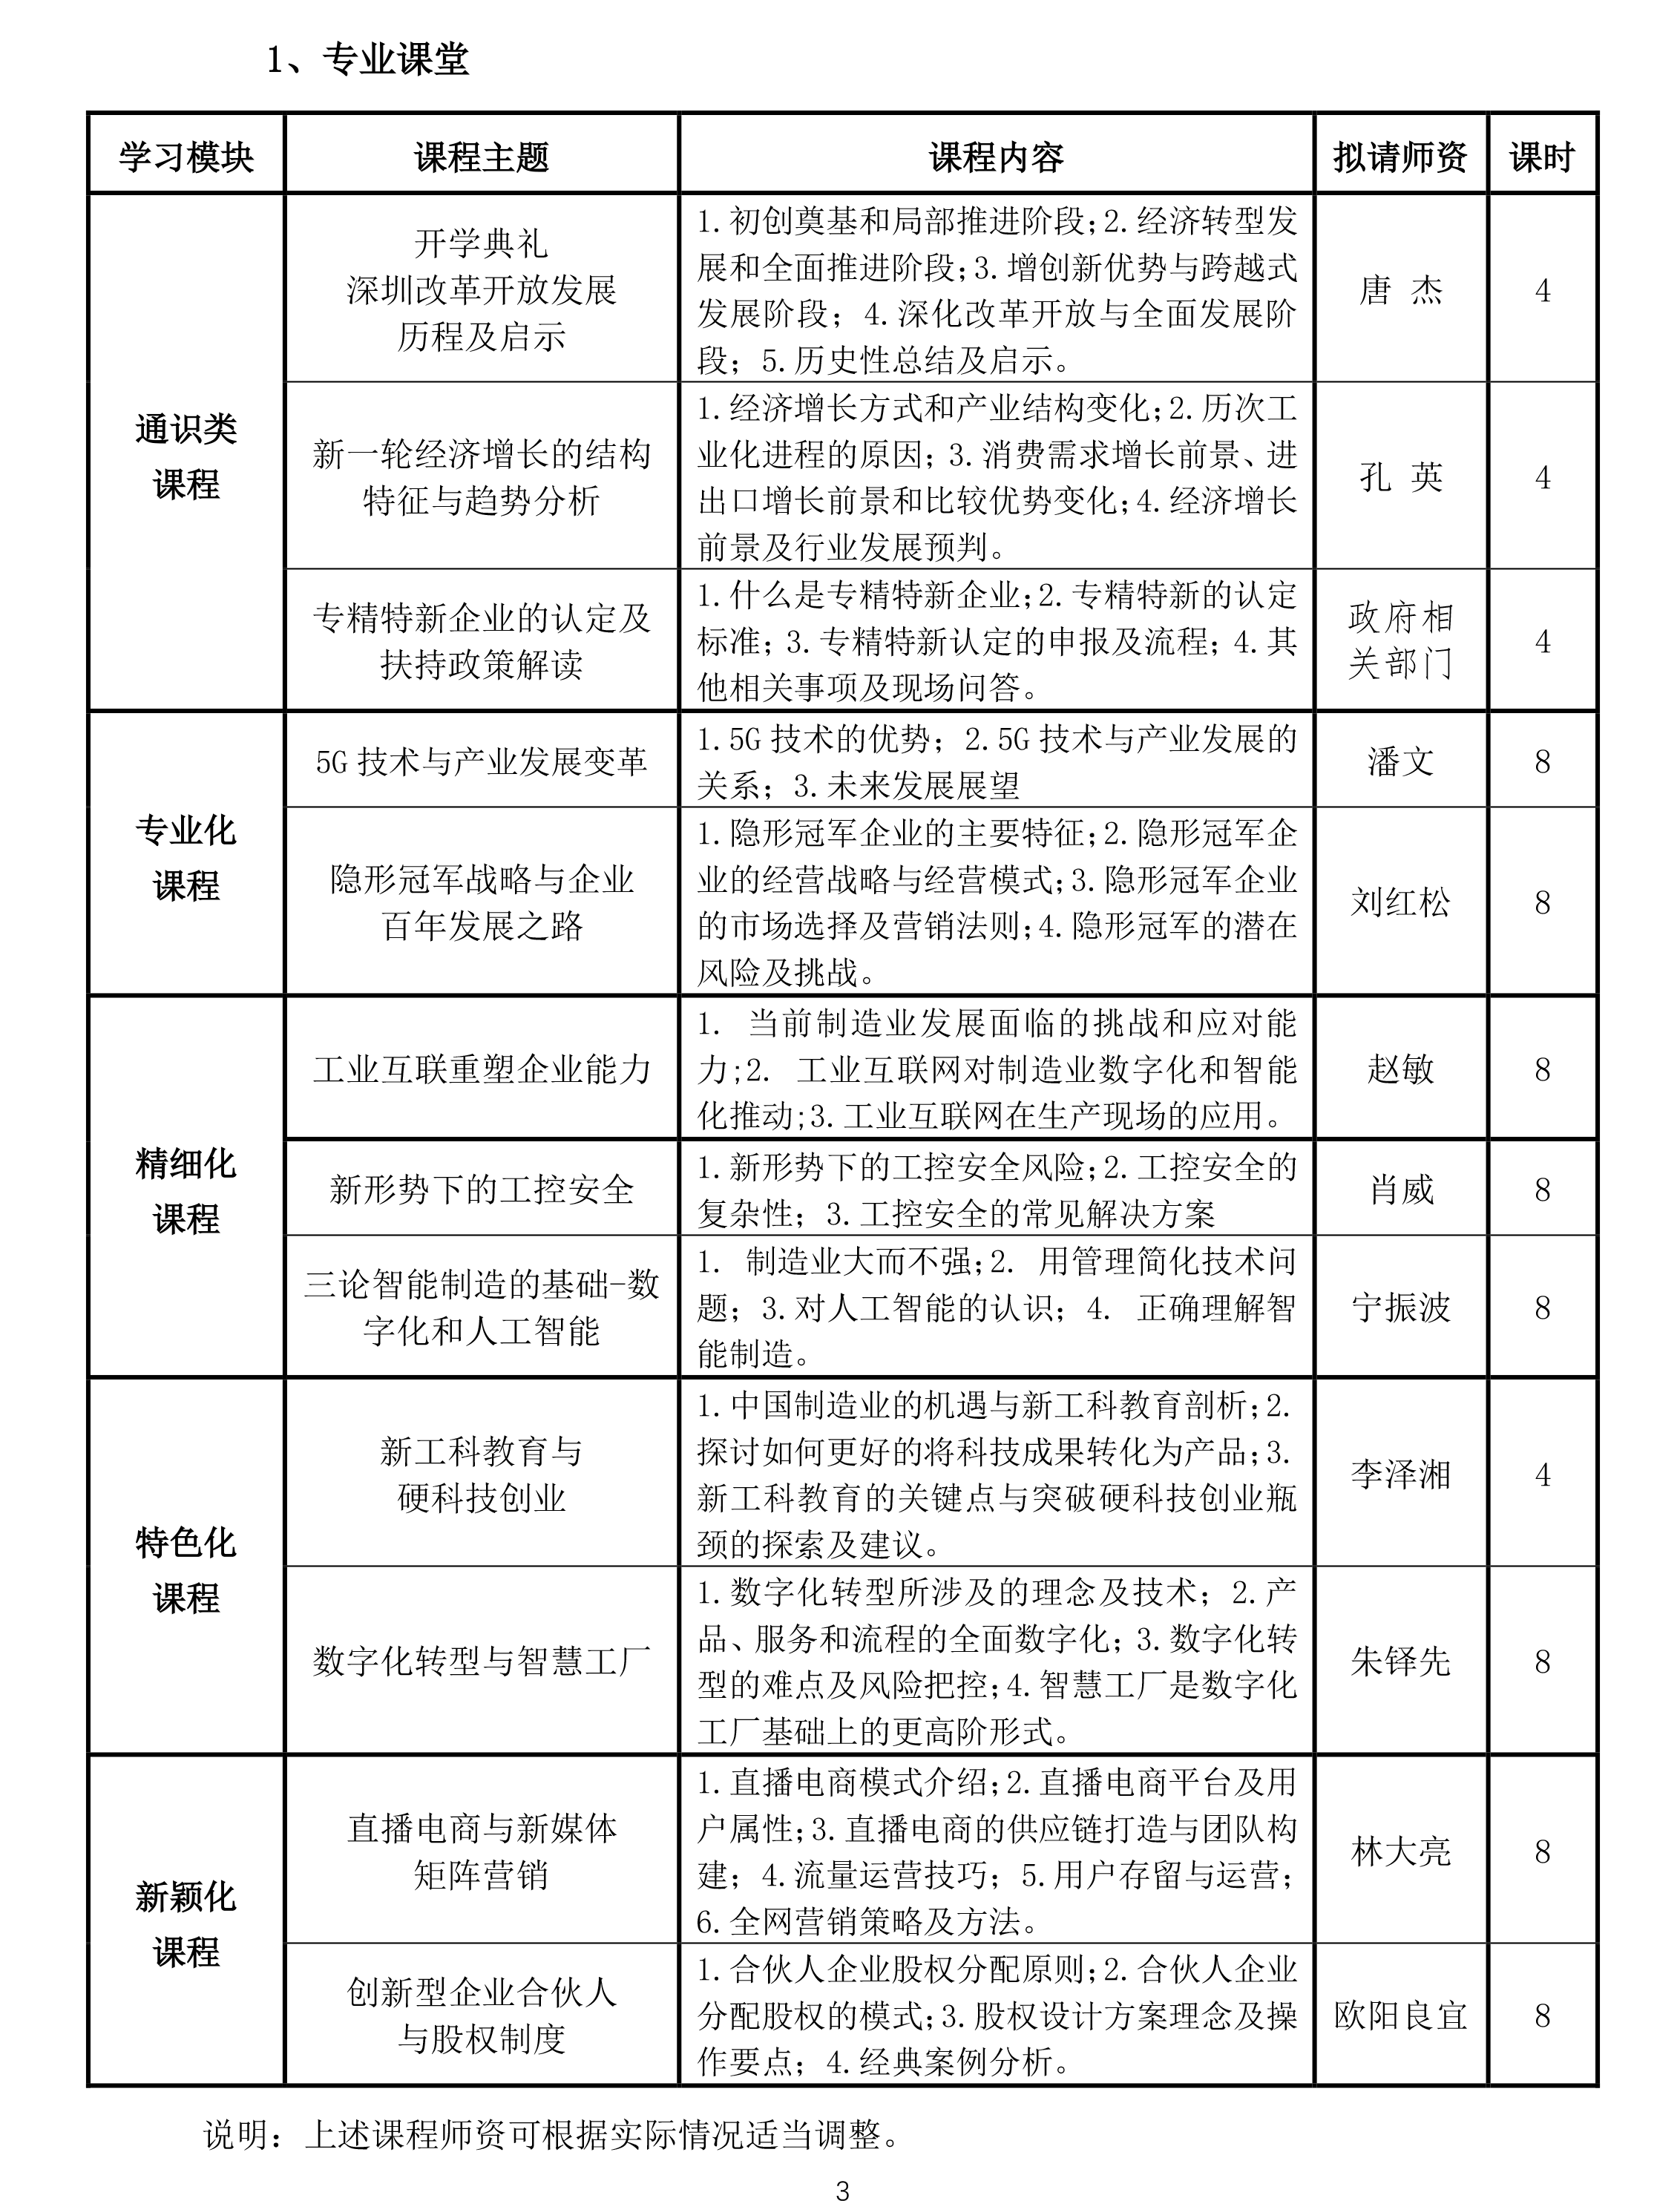 【北大】深圳市民营及中小企业专精特新高级研修班（第1期）简章20210120(1)-3.png